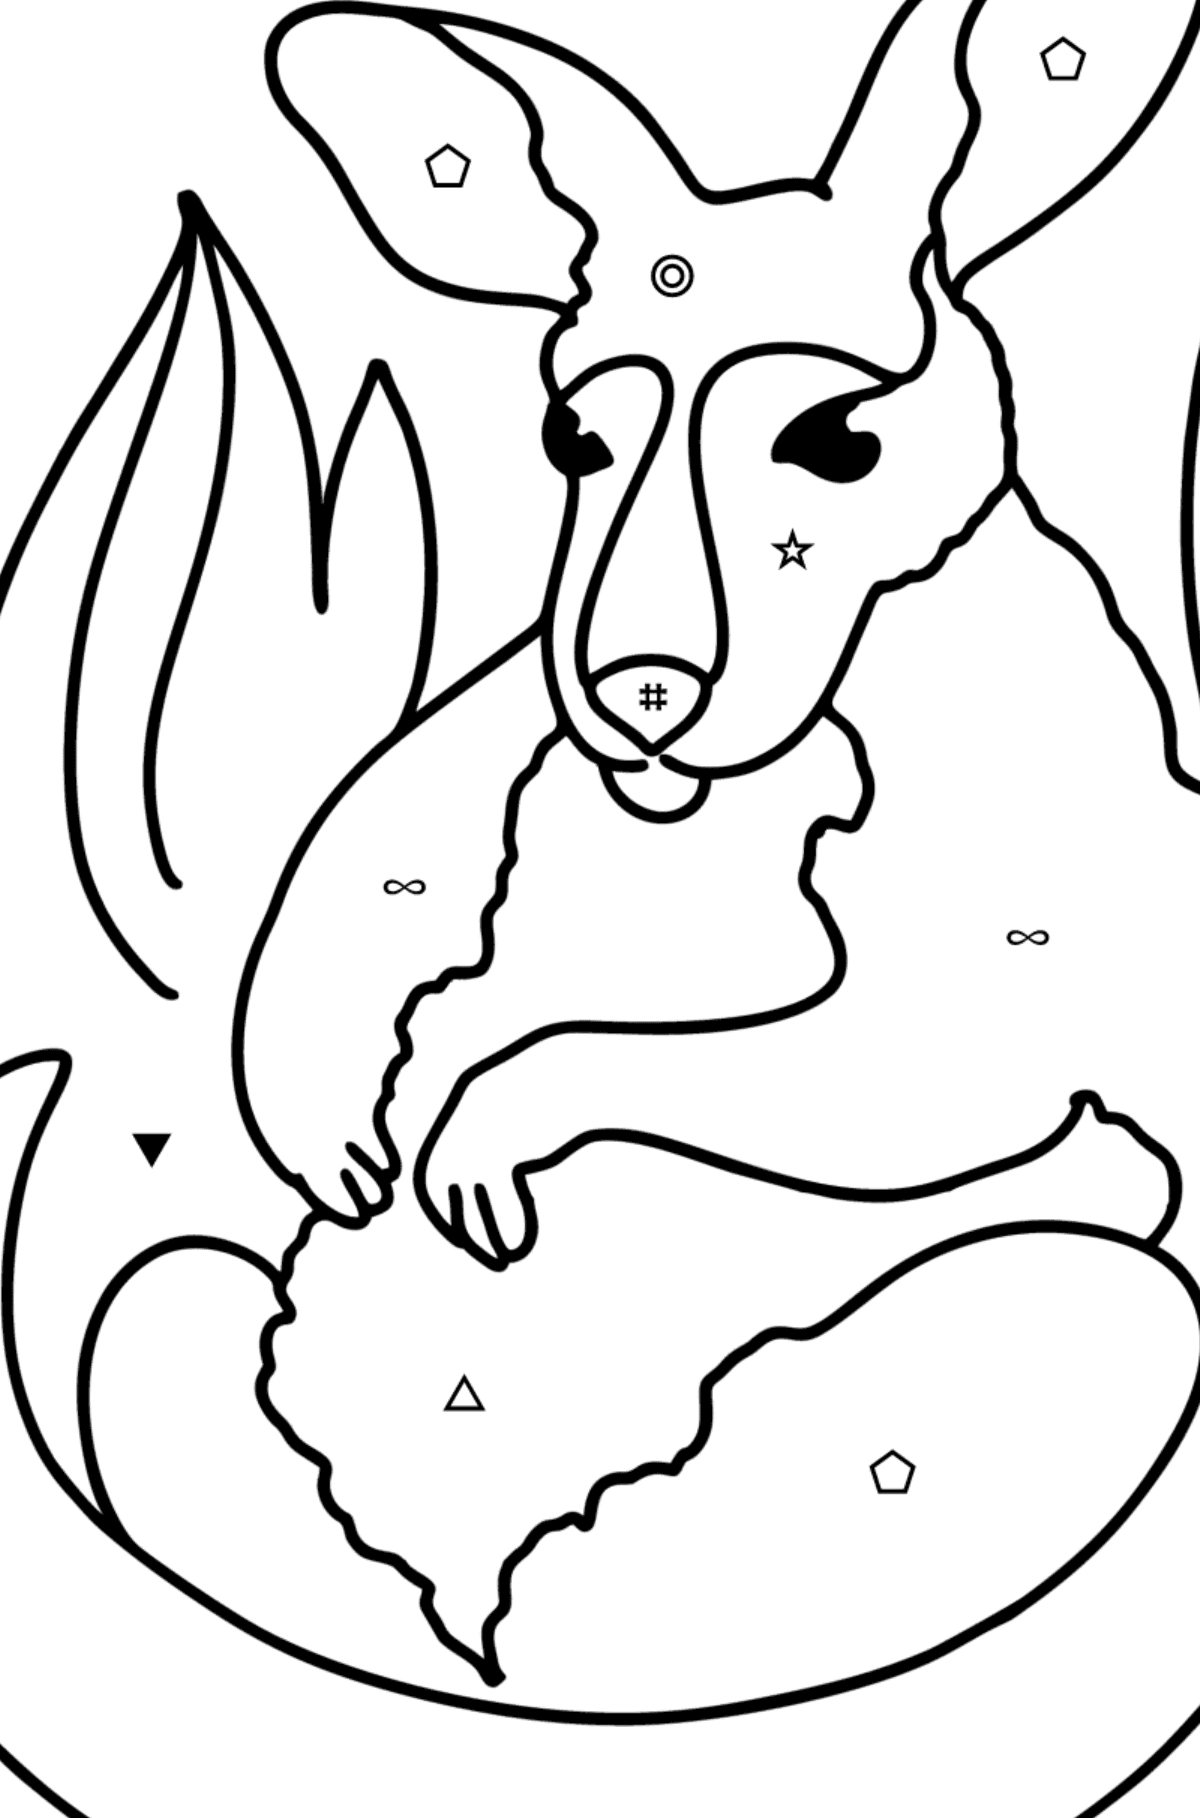 Disegni da colorare - Adorabile cucciolo di canguro - Colorare per simboli e forme geometriche per bambini